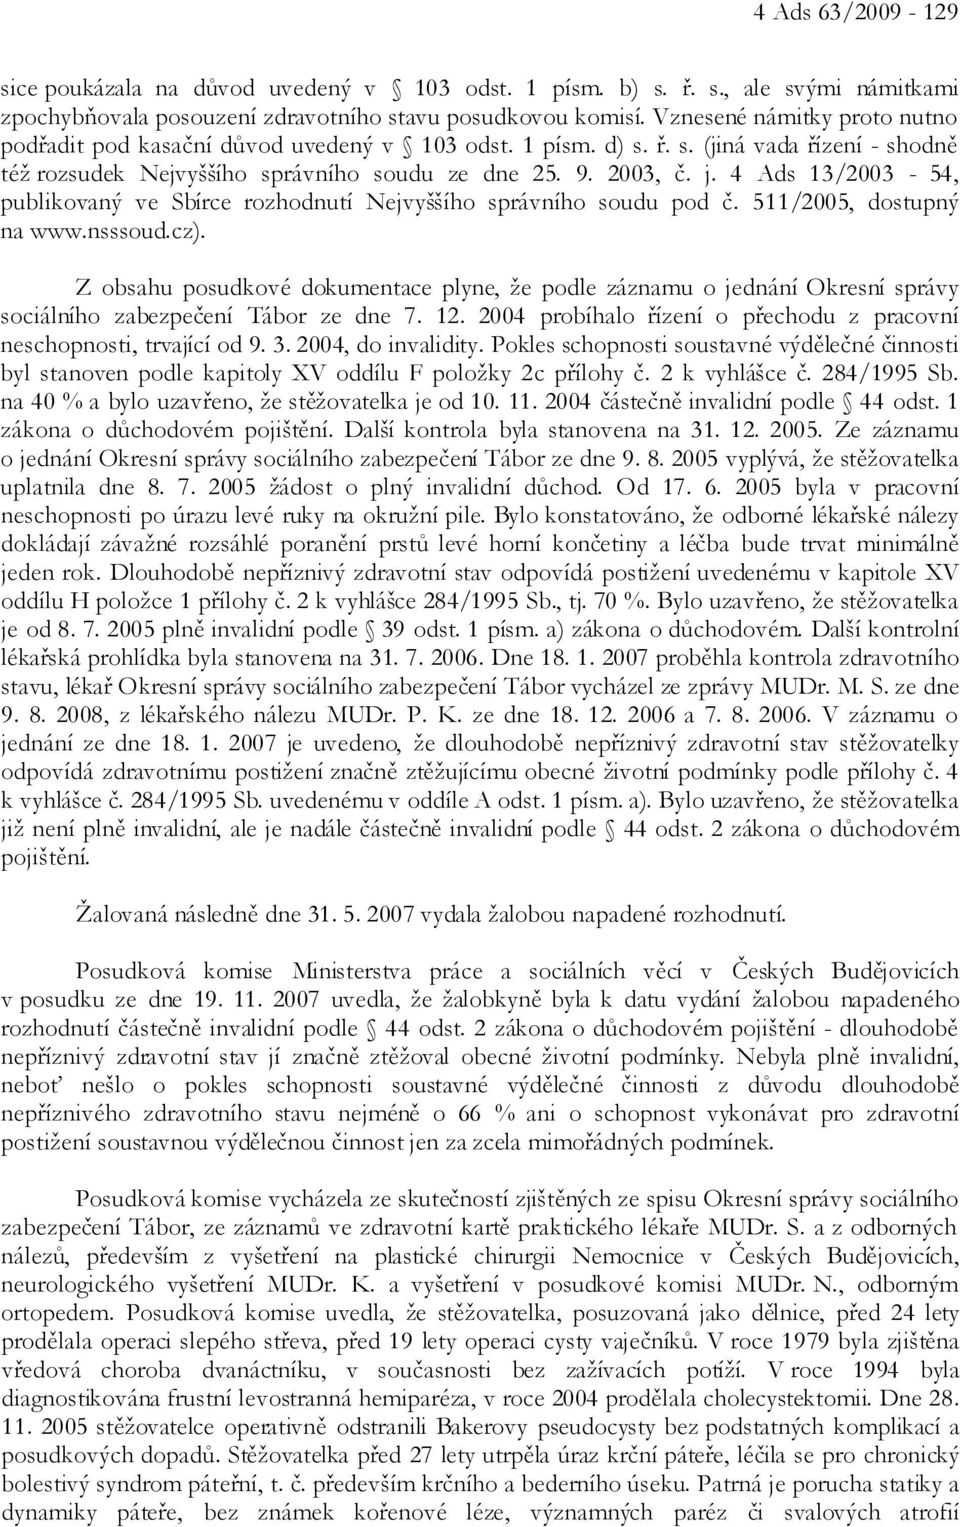 4 Ads 13/2003-54, publikovaný ve Sbírce rozhodnutí Nejvyššího správního soudu pod č. 511/2005, dostupný na www.nsssoud.cz).